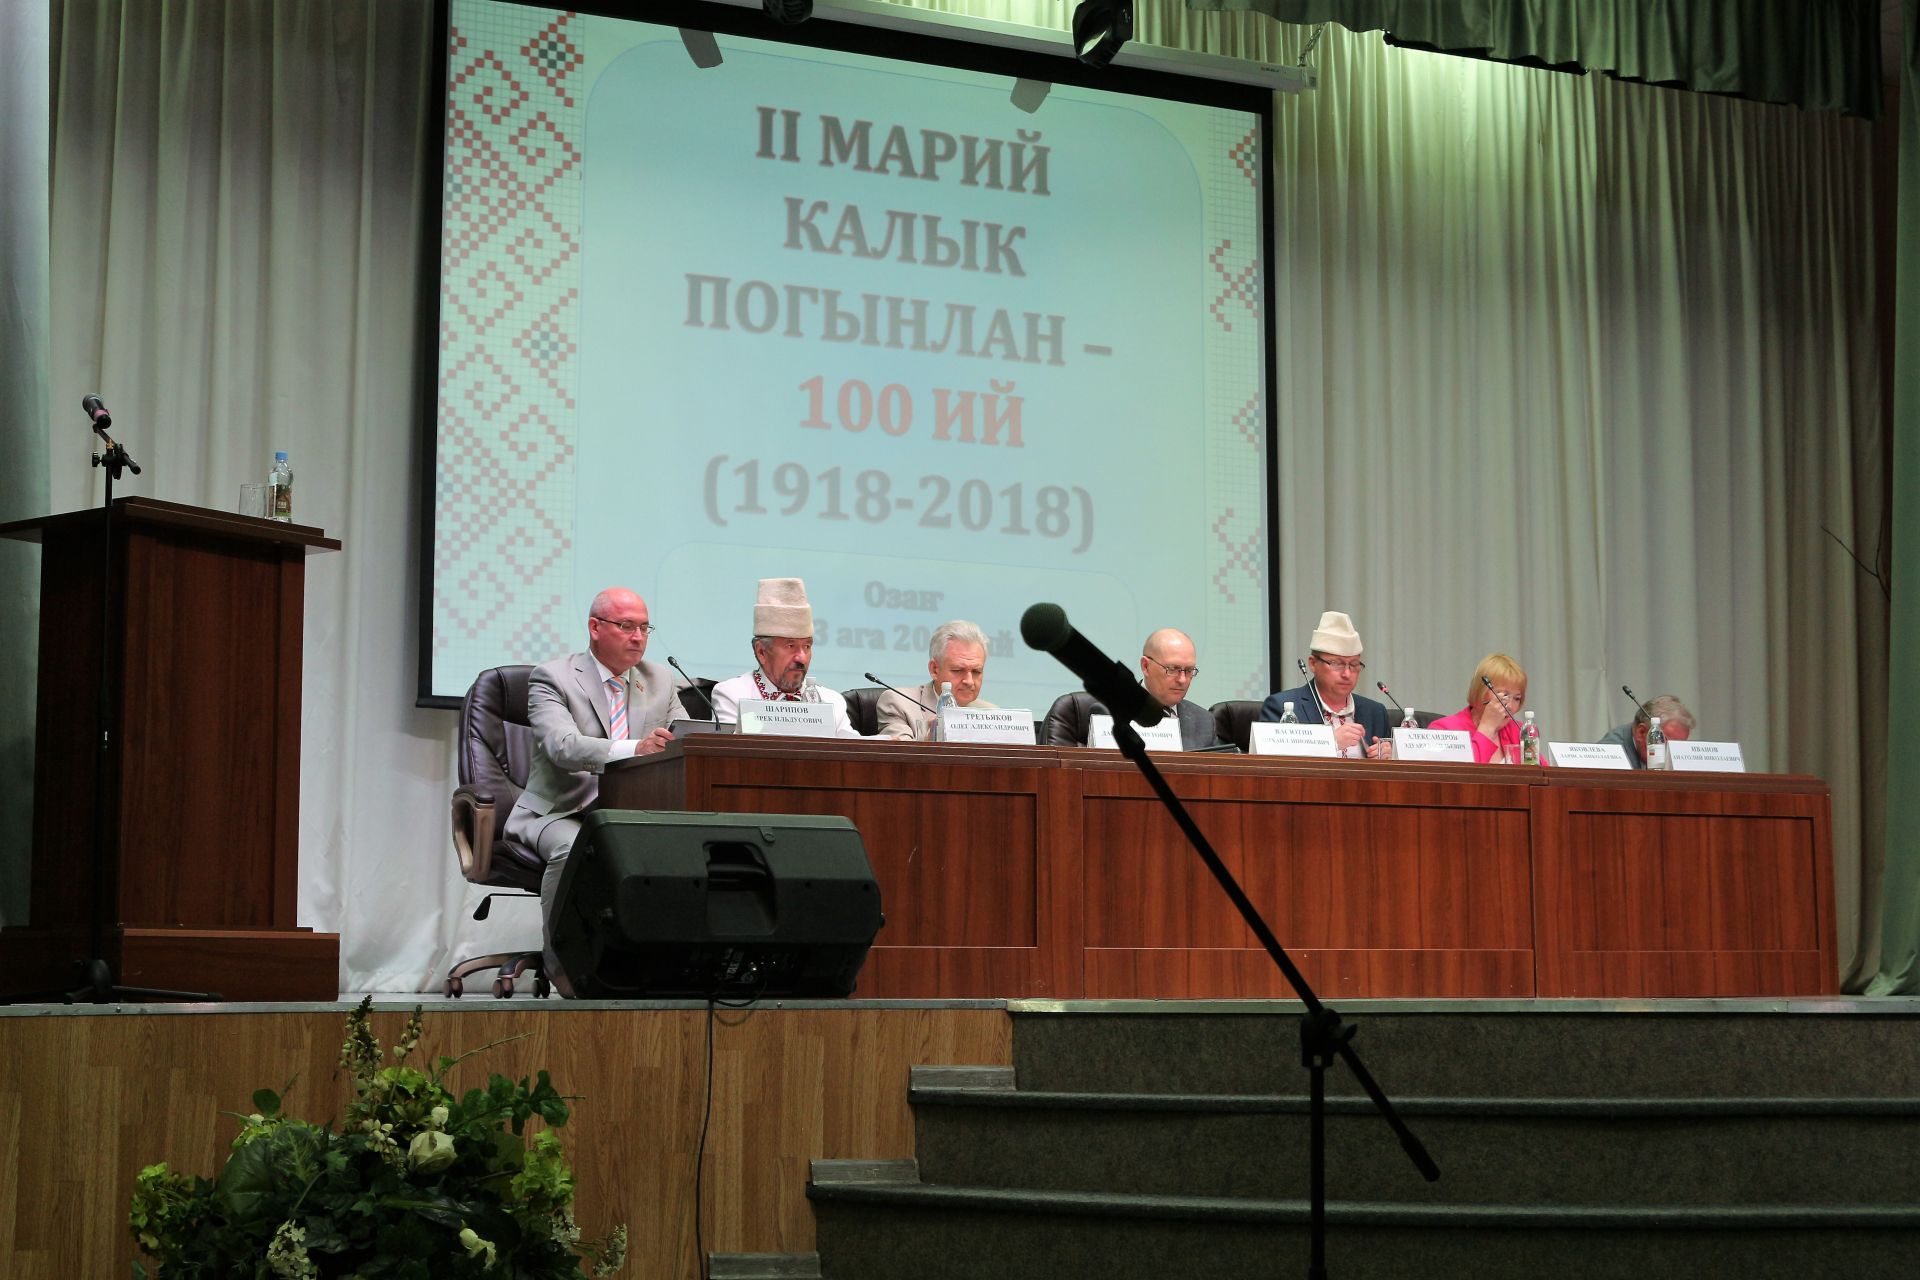 Народный марийский ансамбль "Элнет" принял участие в заседании Президиума Всемарийского совета